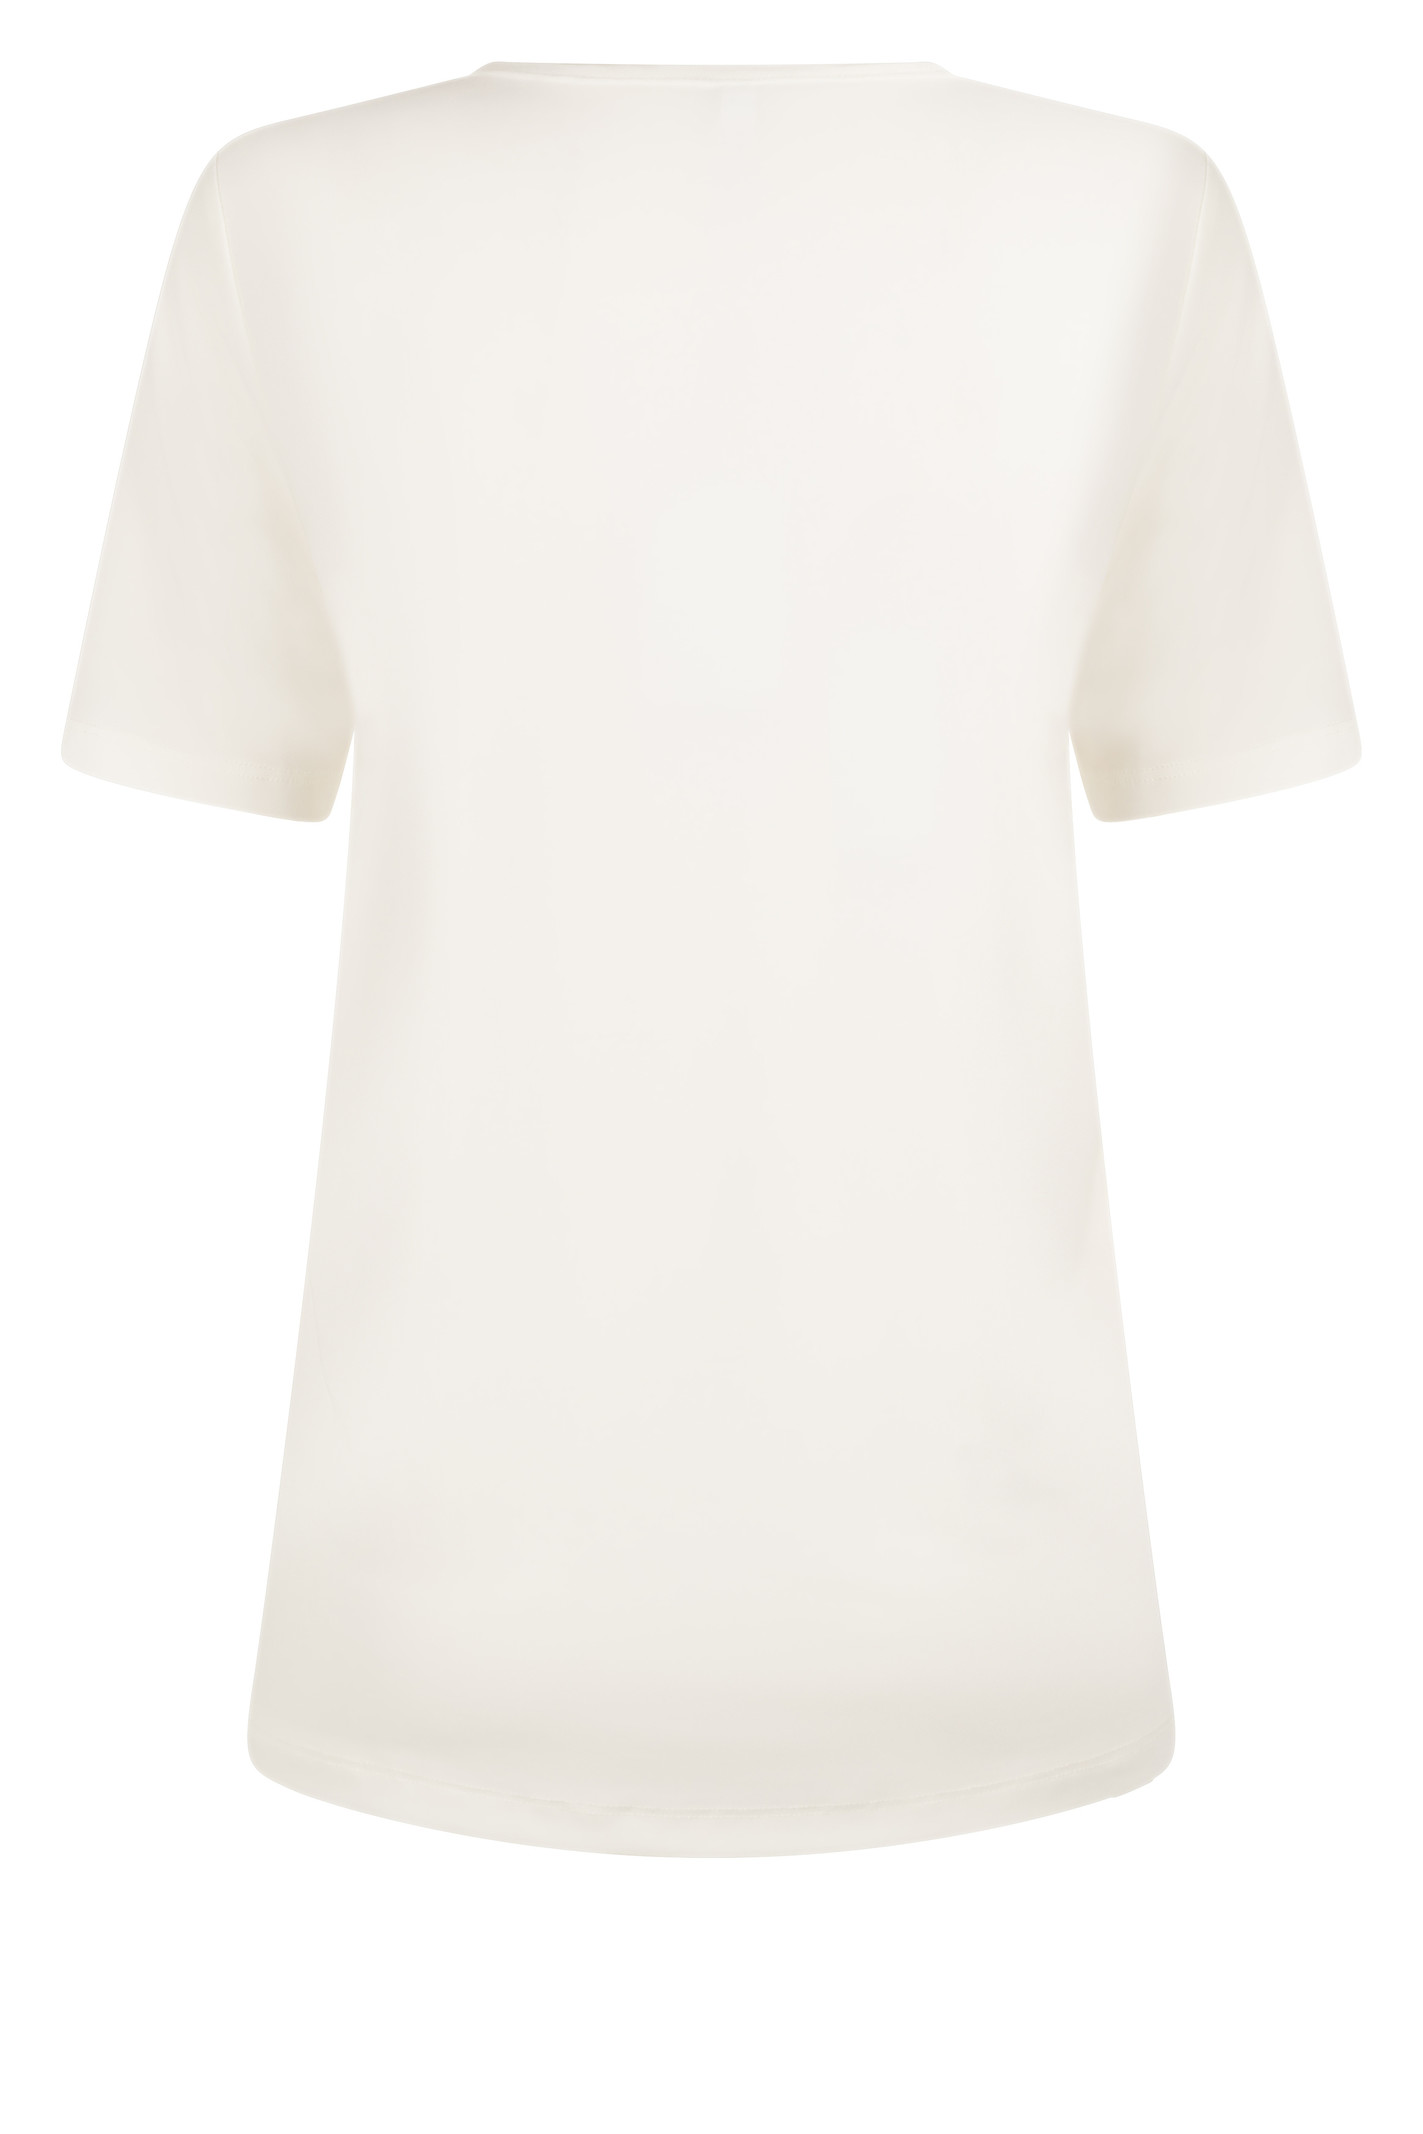 Zoso Zoso 215 Michelle Splendour t-shirt off white/green